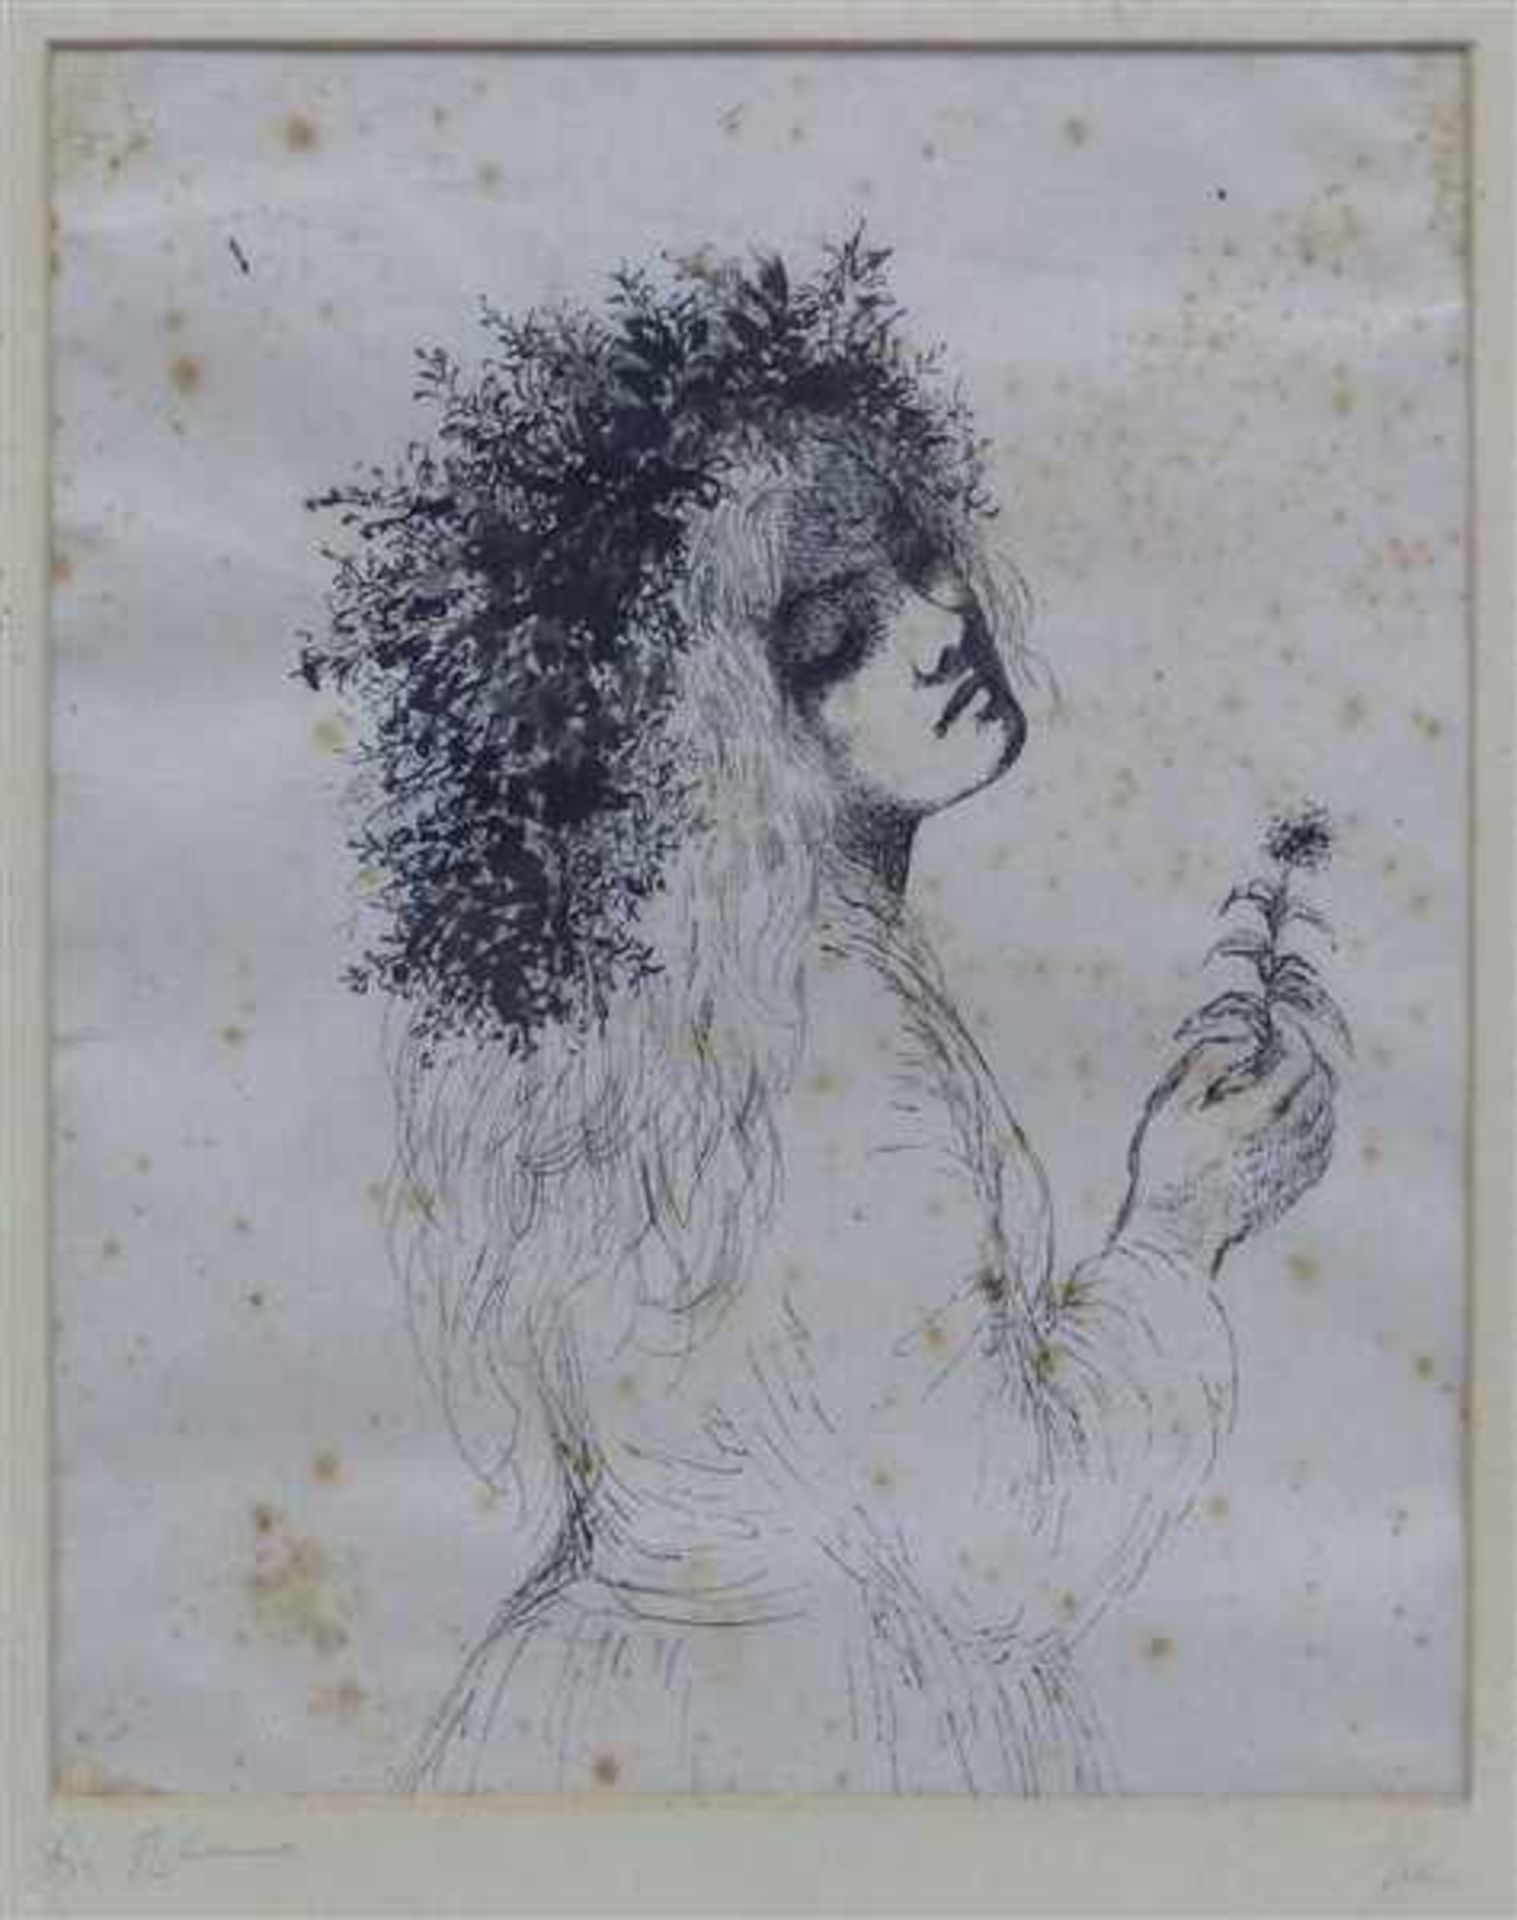 Hanna Nagel 1907 - 1975, Tuschzeichnung, "die Blume", junges Mädchen mit Blütenkranz im Haar und